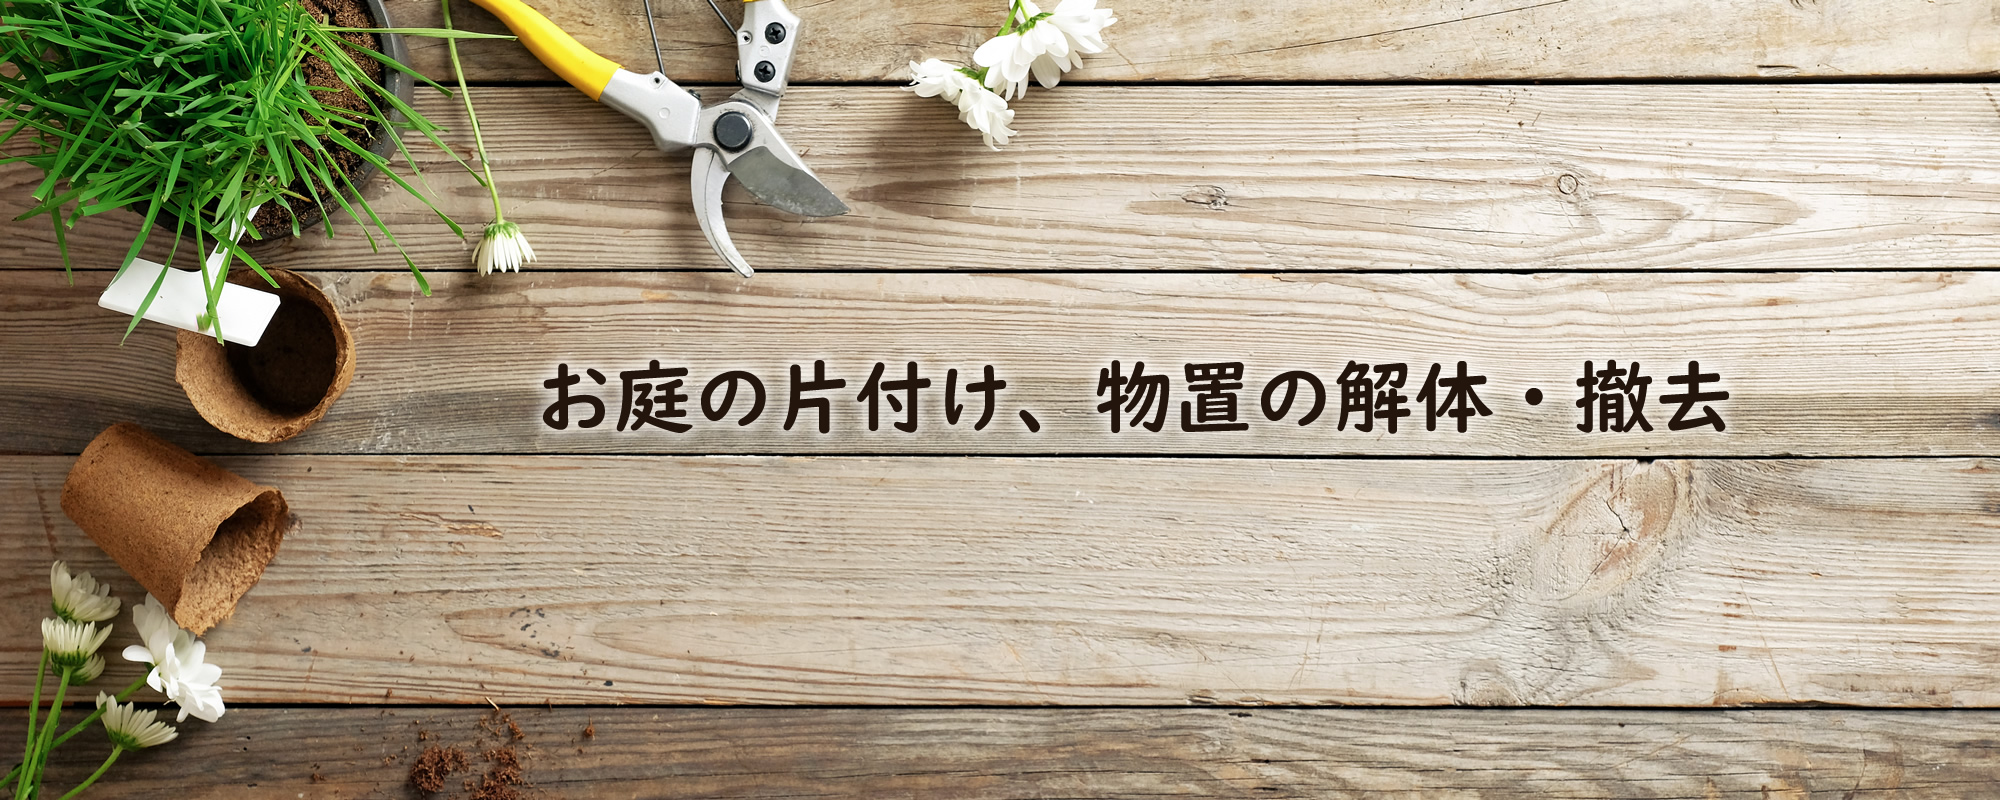 神奈川県厚木市の遺品整理なら片づけコーナン株式会社 港南サービスメイン画像2